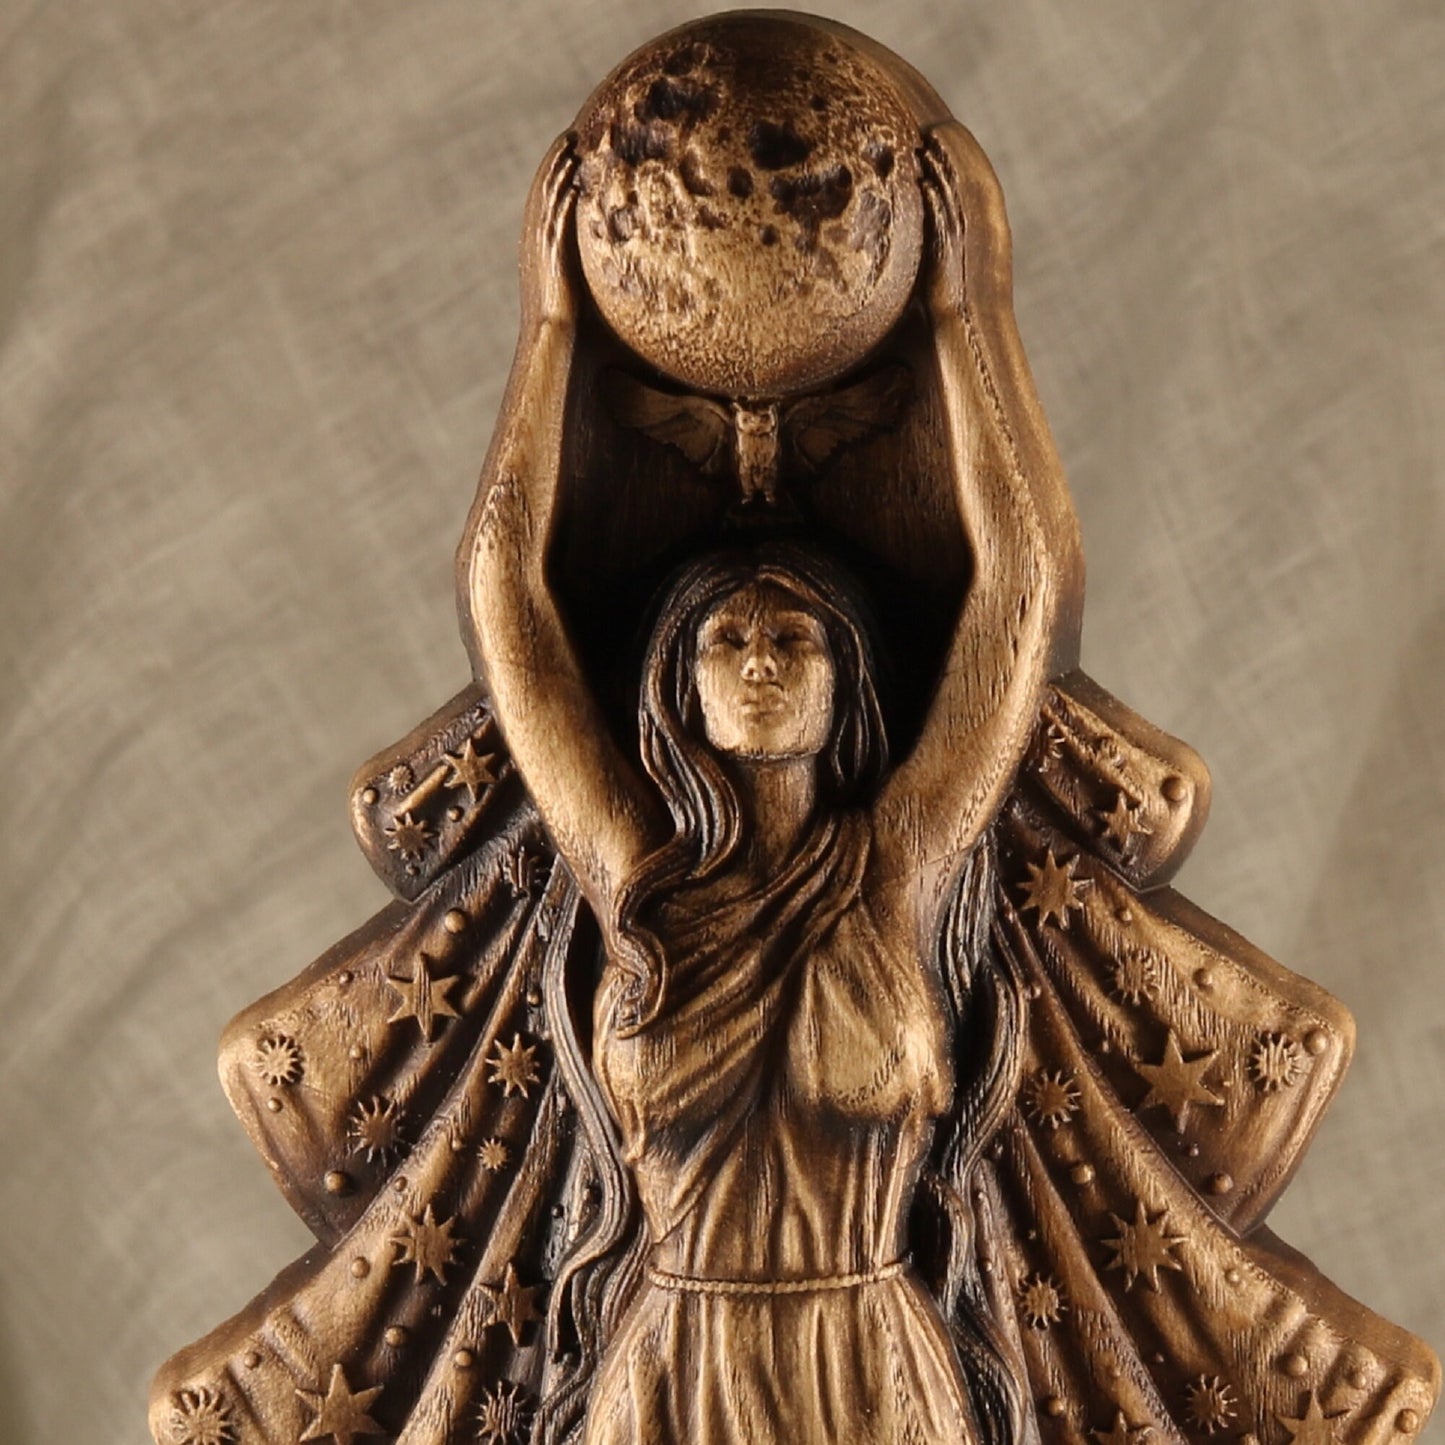 Nyx Statue - Wooden Greek Goddess Sculpture